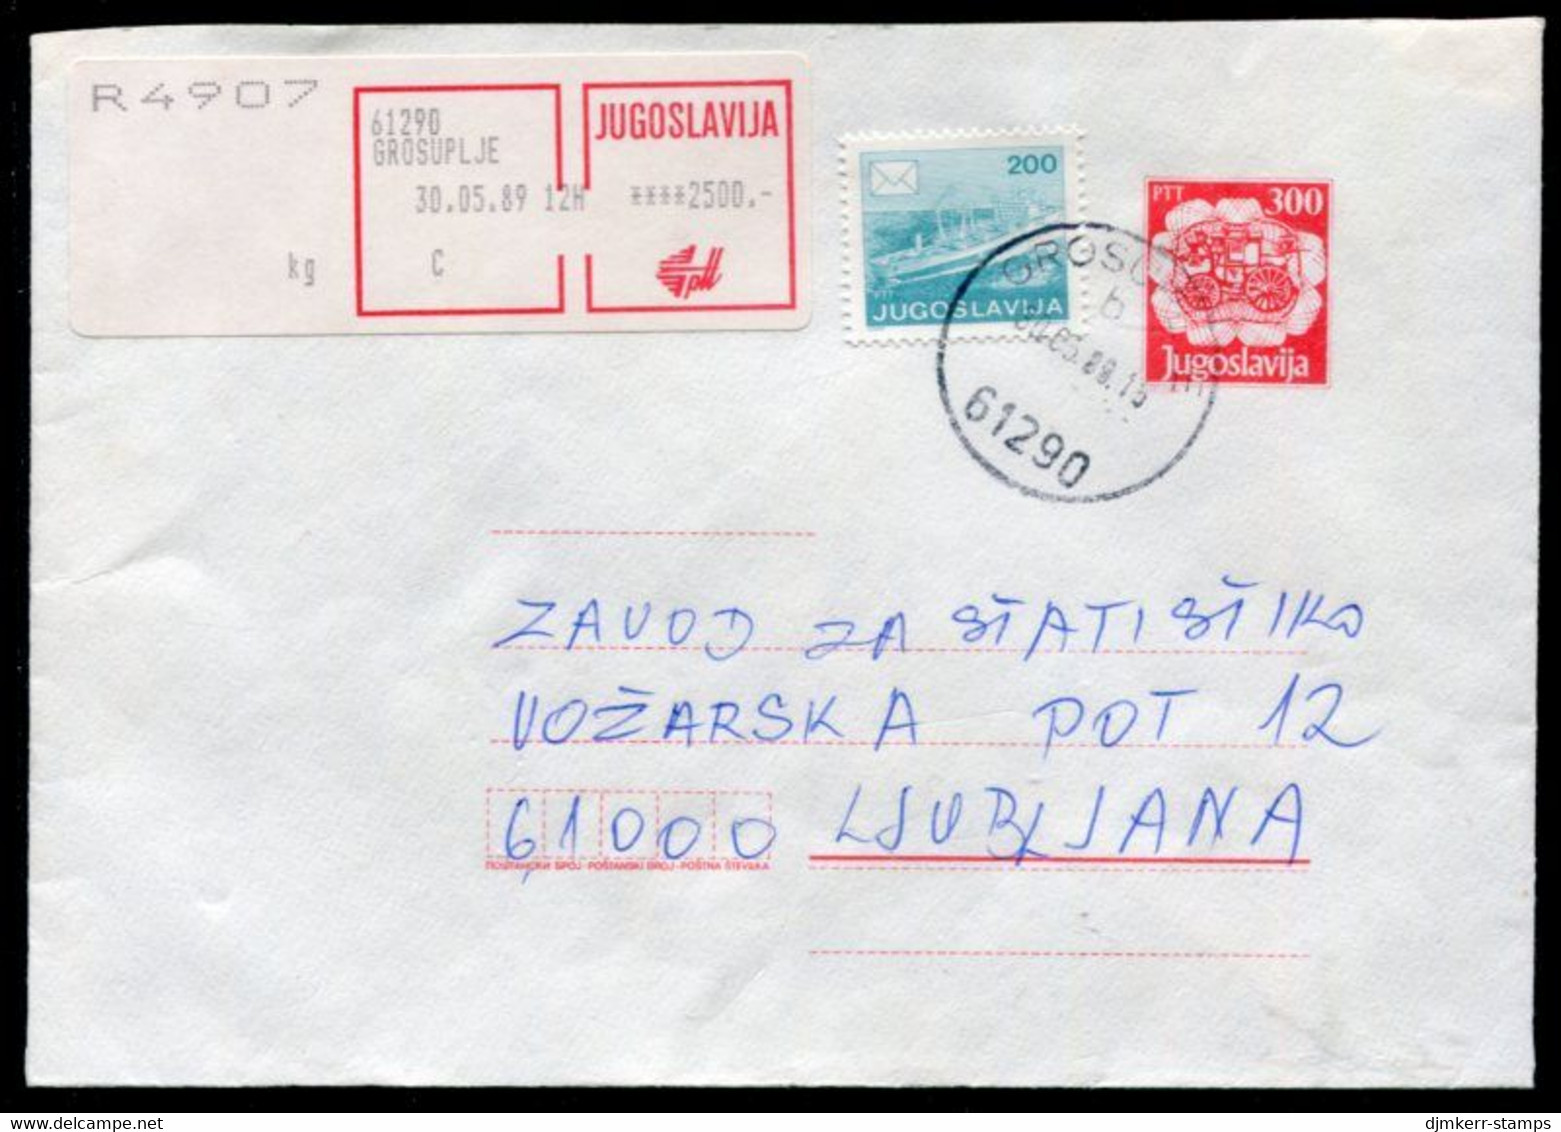 YUGOSLAVIA 1989 Mailcoach 300 D.stationery Envelope Registered With Additional Franking.  Michel U89 - Postwaardestukken